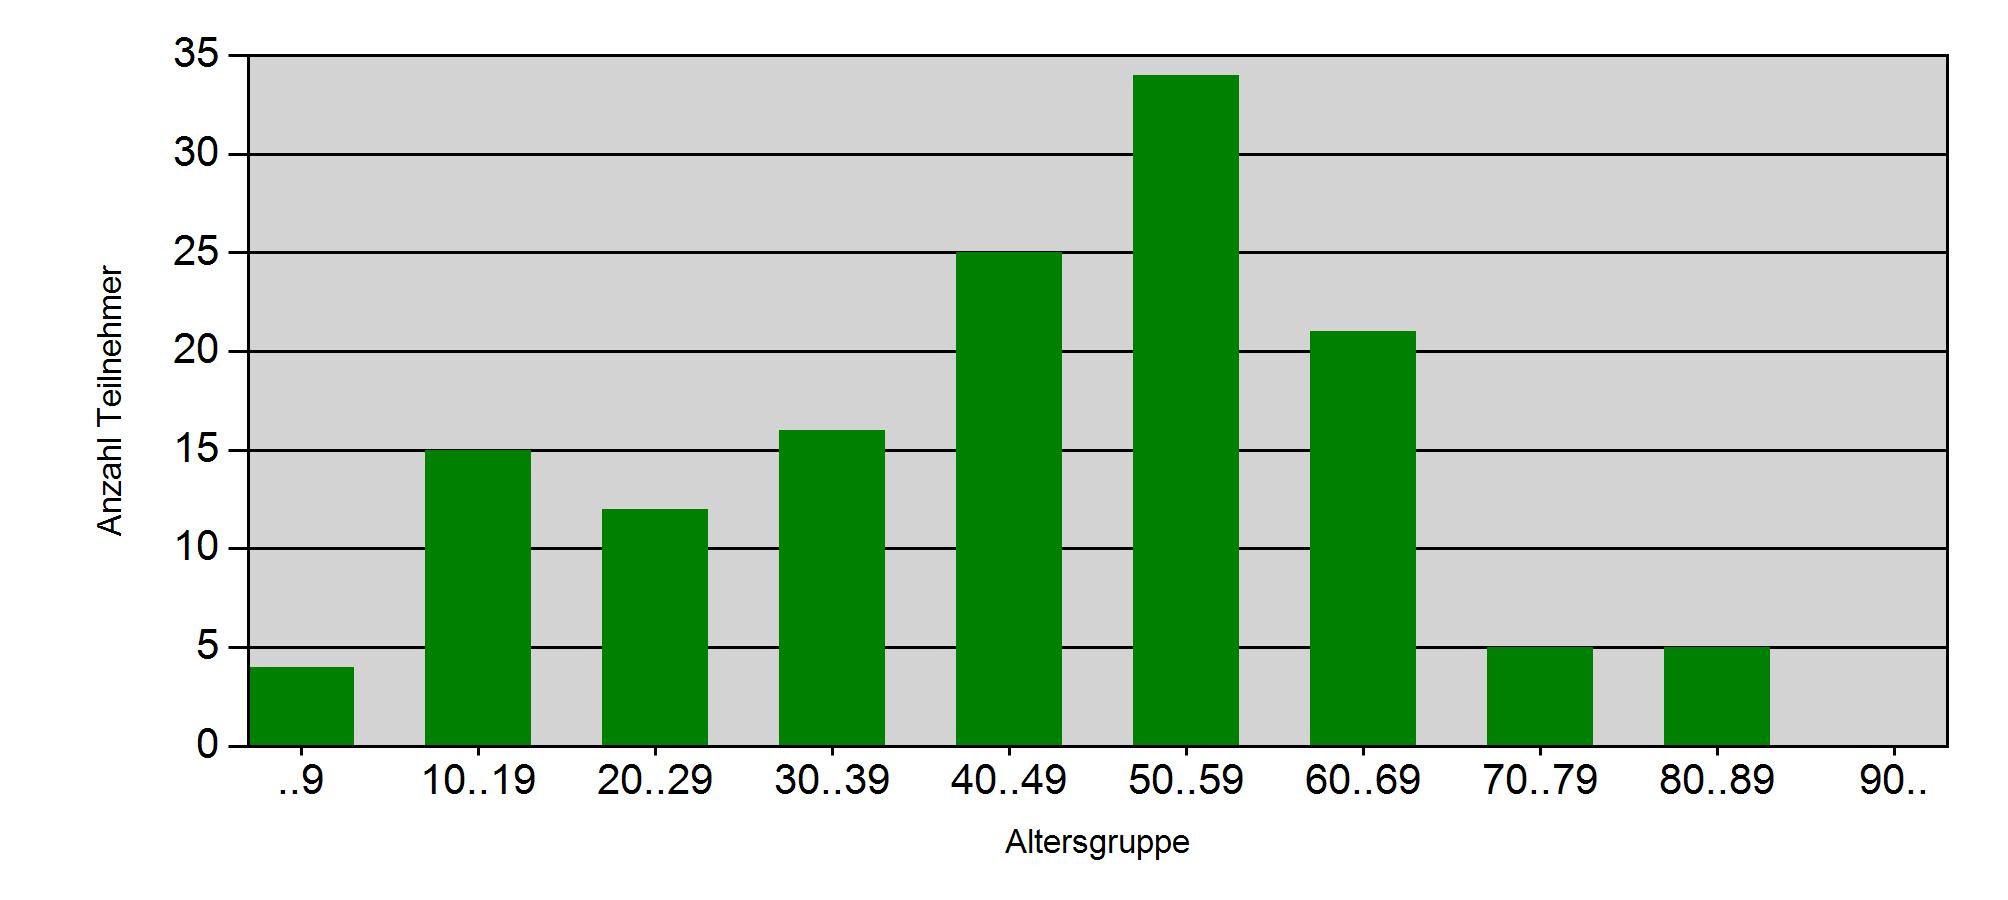 Grafik 1: Altersverteilung in 10-Jahresschritten